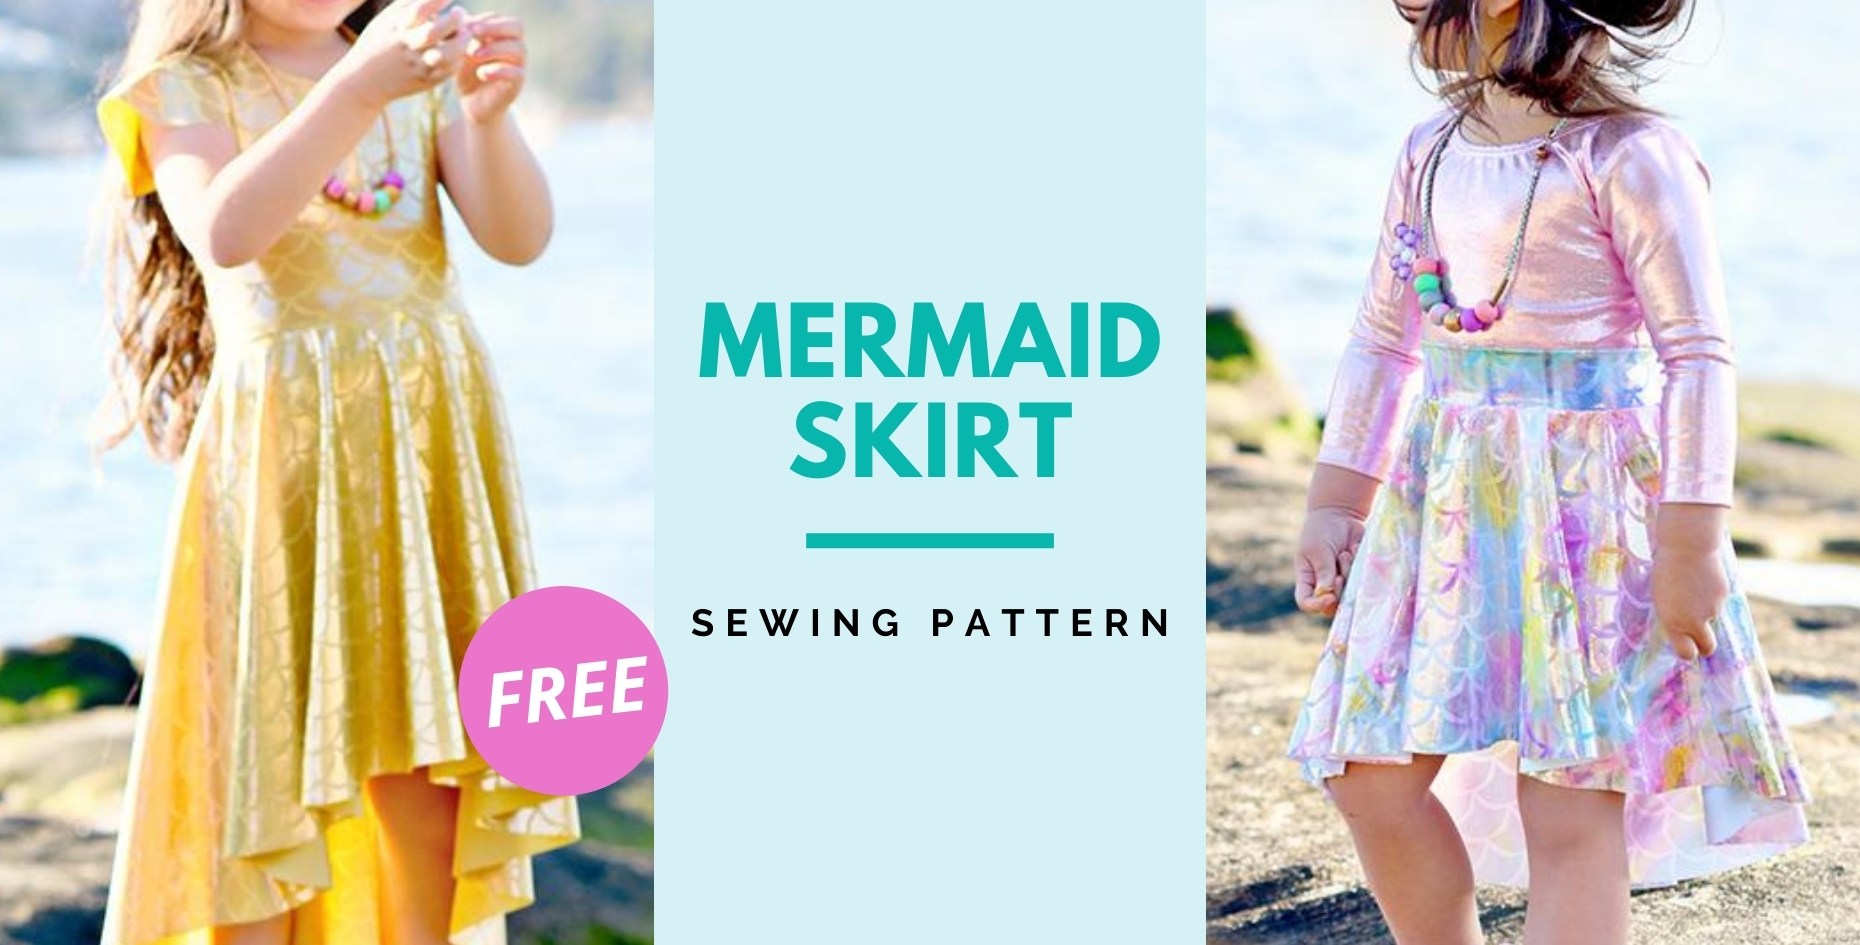 mermaid-skirt-free-sewing-pattern-0-14-sizes-sew-modern-kids